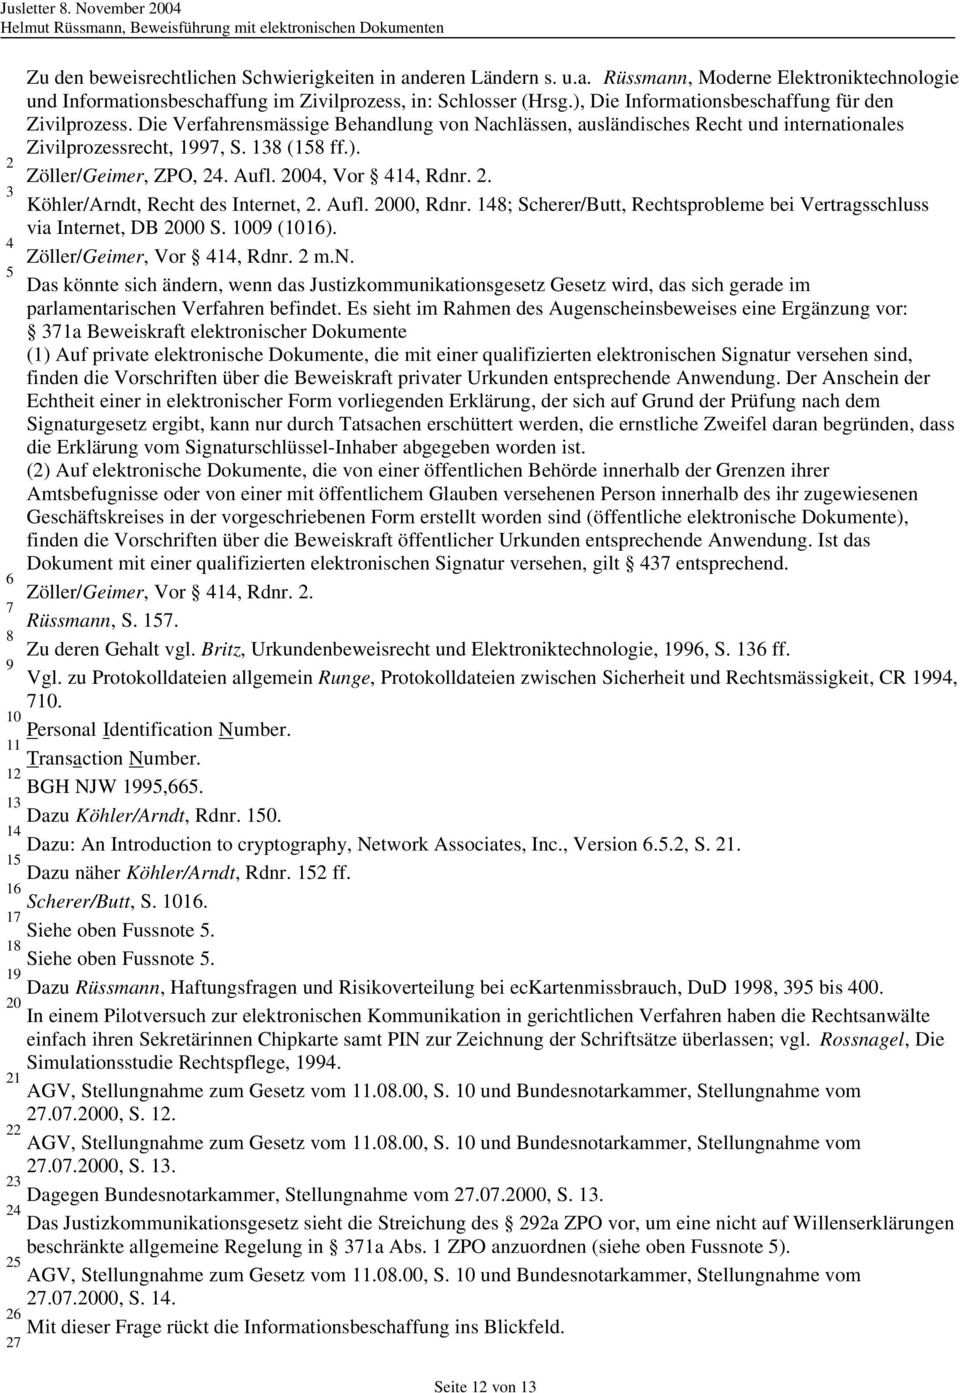 Aufl. 2004, Vor 414, Rdnr. 2. 3 Köhler/Arndt, Recht des Internet, 2. Aufl. 2000, Rdnr. 148; Scherer/Butt, Rechtsprobleme bei Vertragsschluss via Internet, DB 2000 S. 1009 (1016).